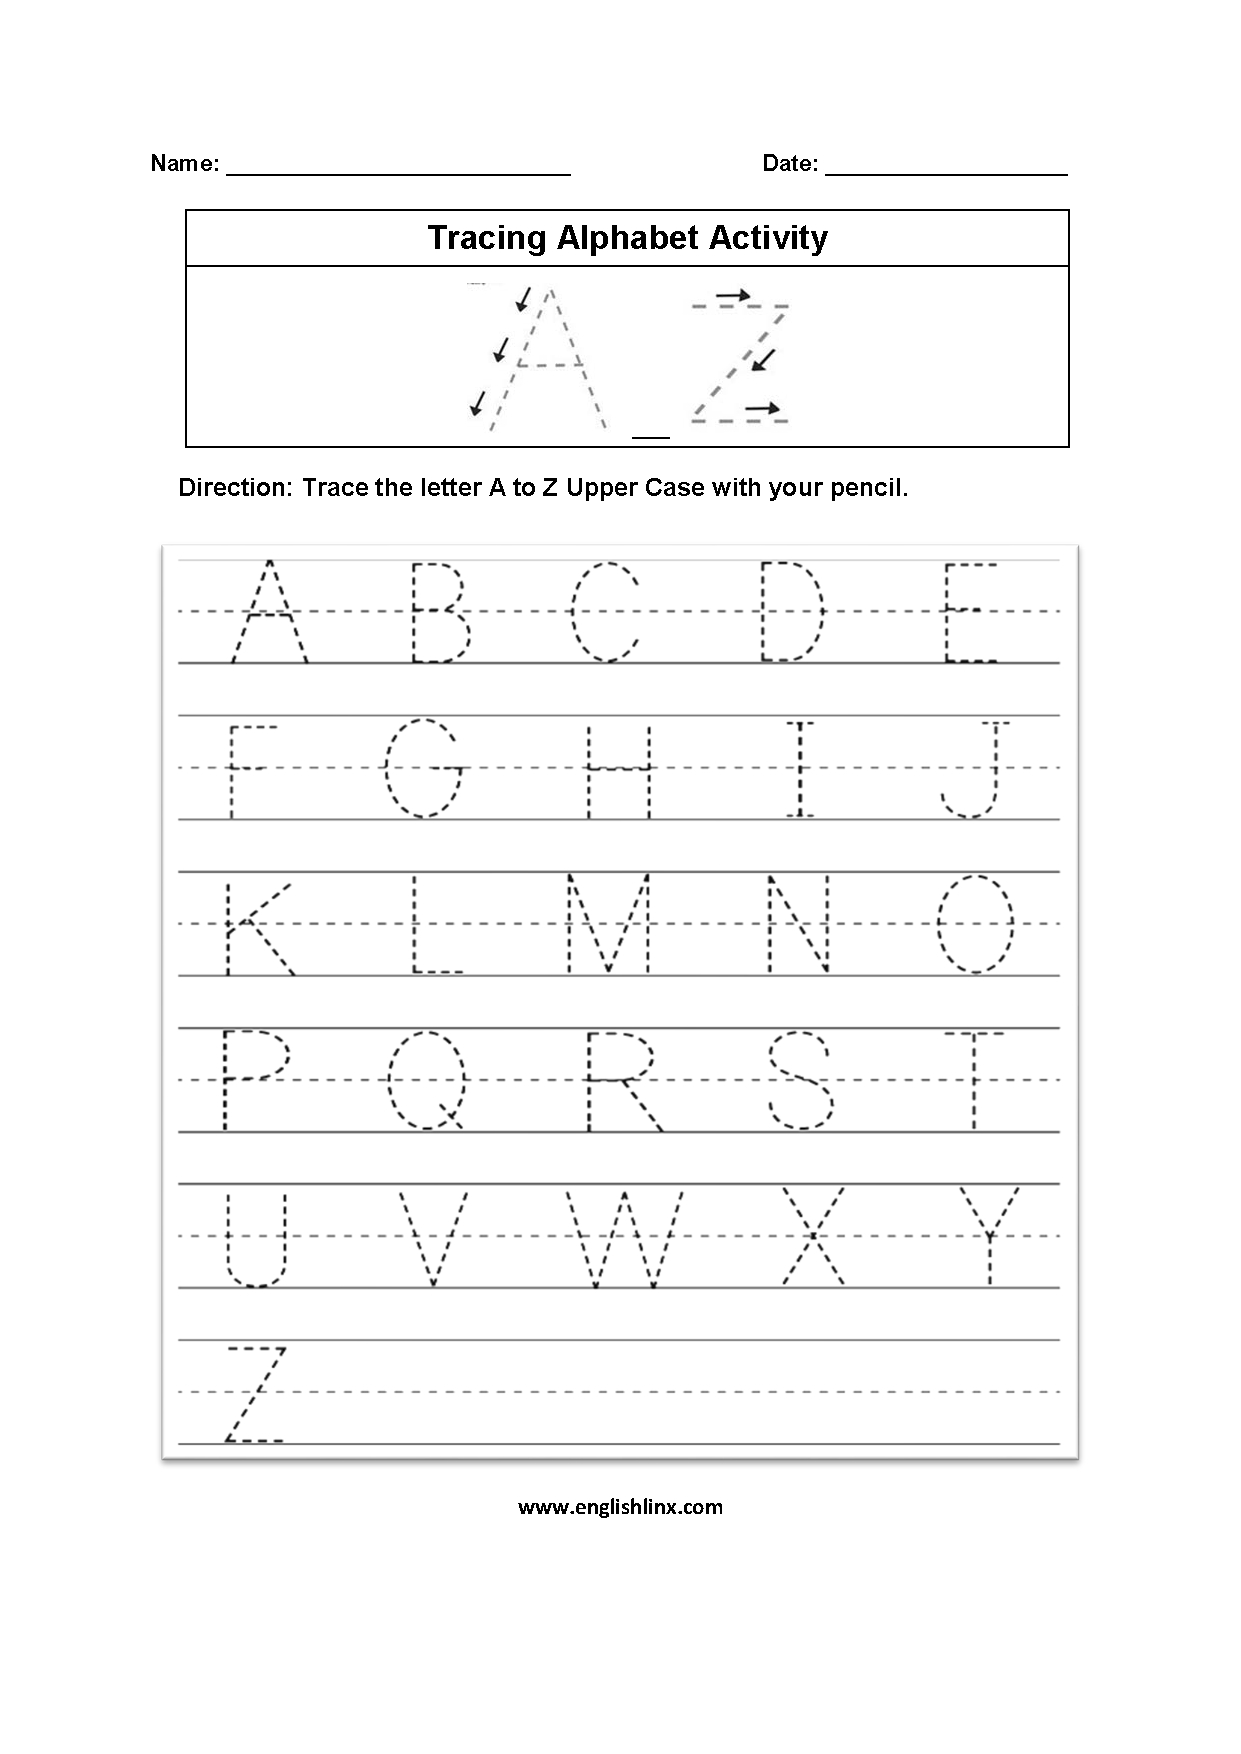 Practice Cursive Writing Worksheetpdf English Alphabet Worksheet Printable Kids Learning 